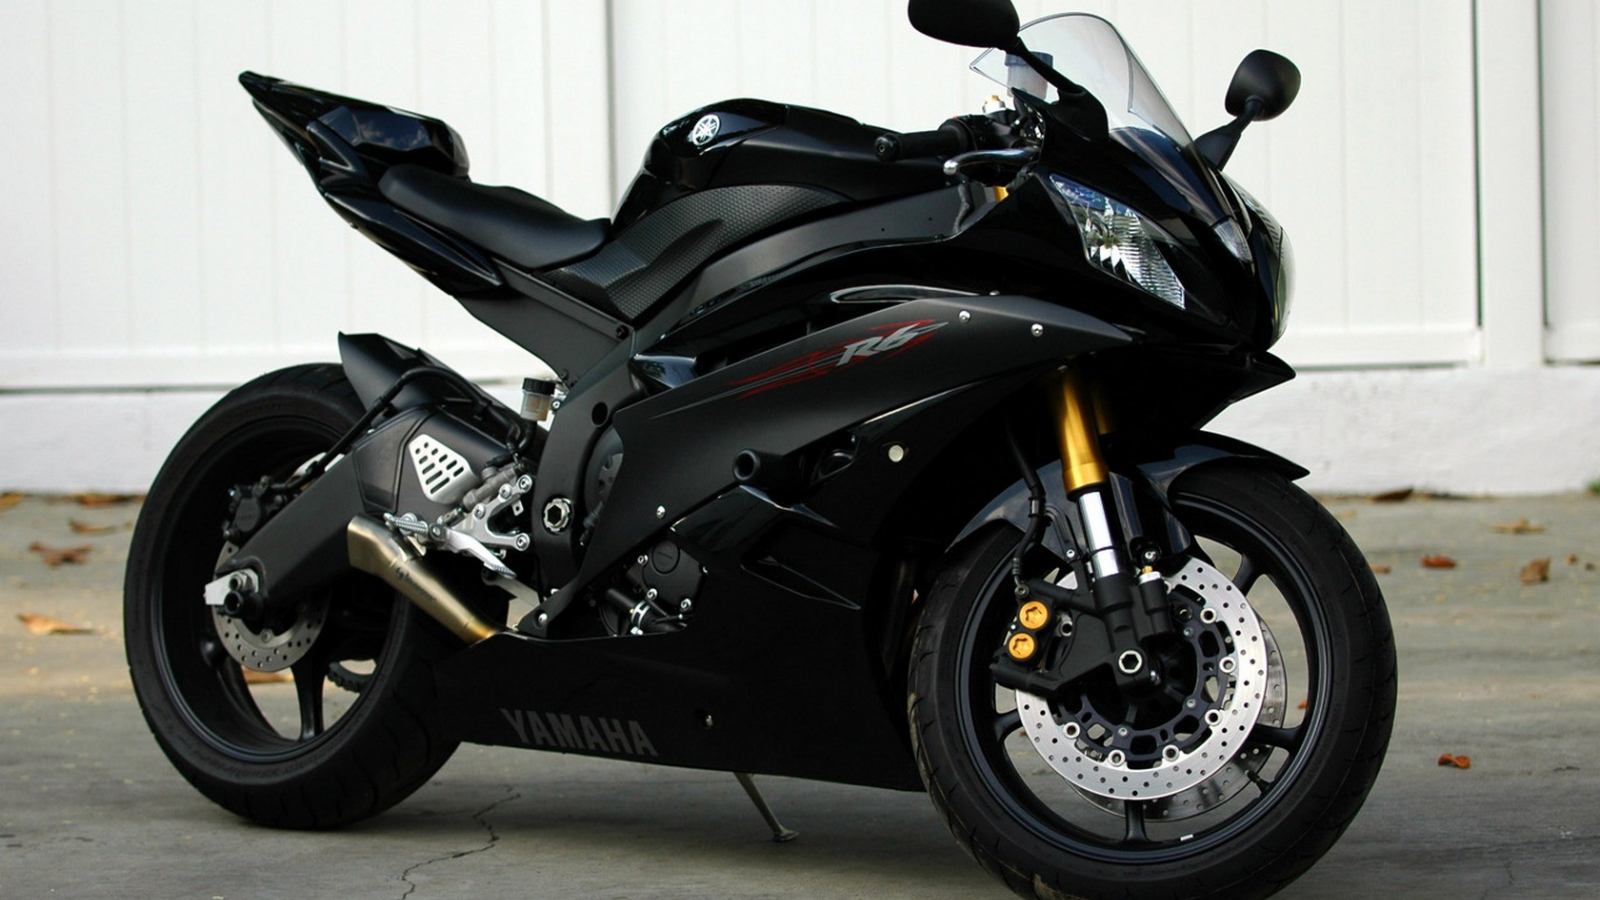 Yamaha R6 600cc mẫu xe thể thao kiểu dáng nam tính mạnh mẽ